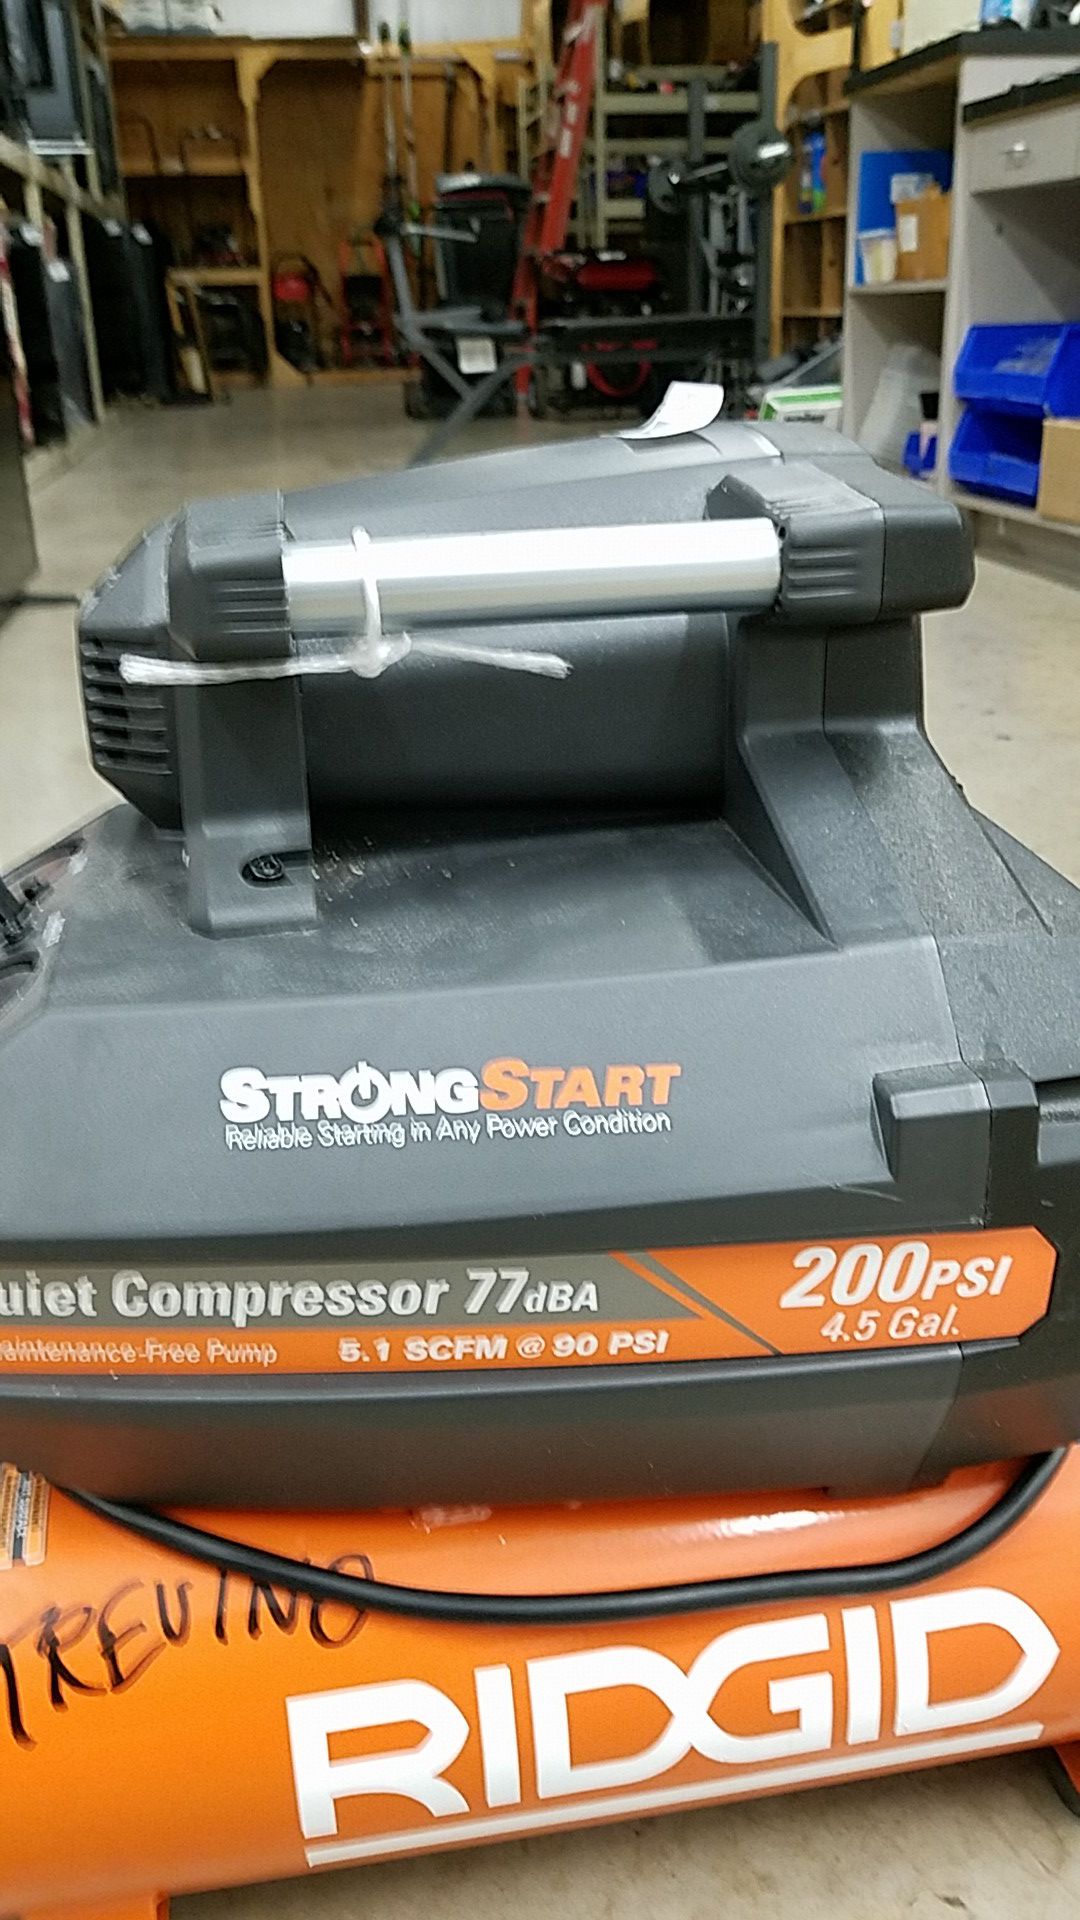 Ridgid compressor 200psi